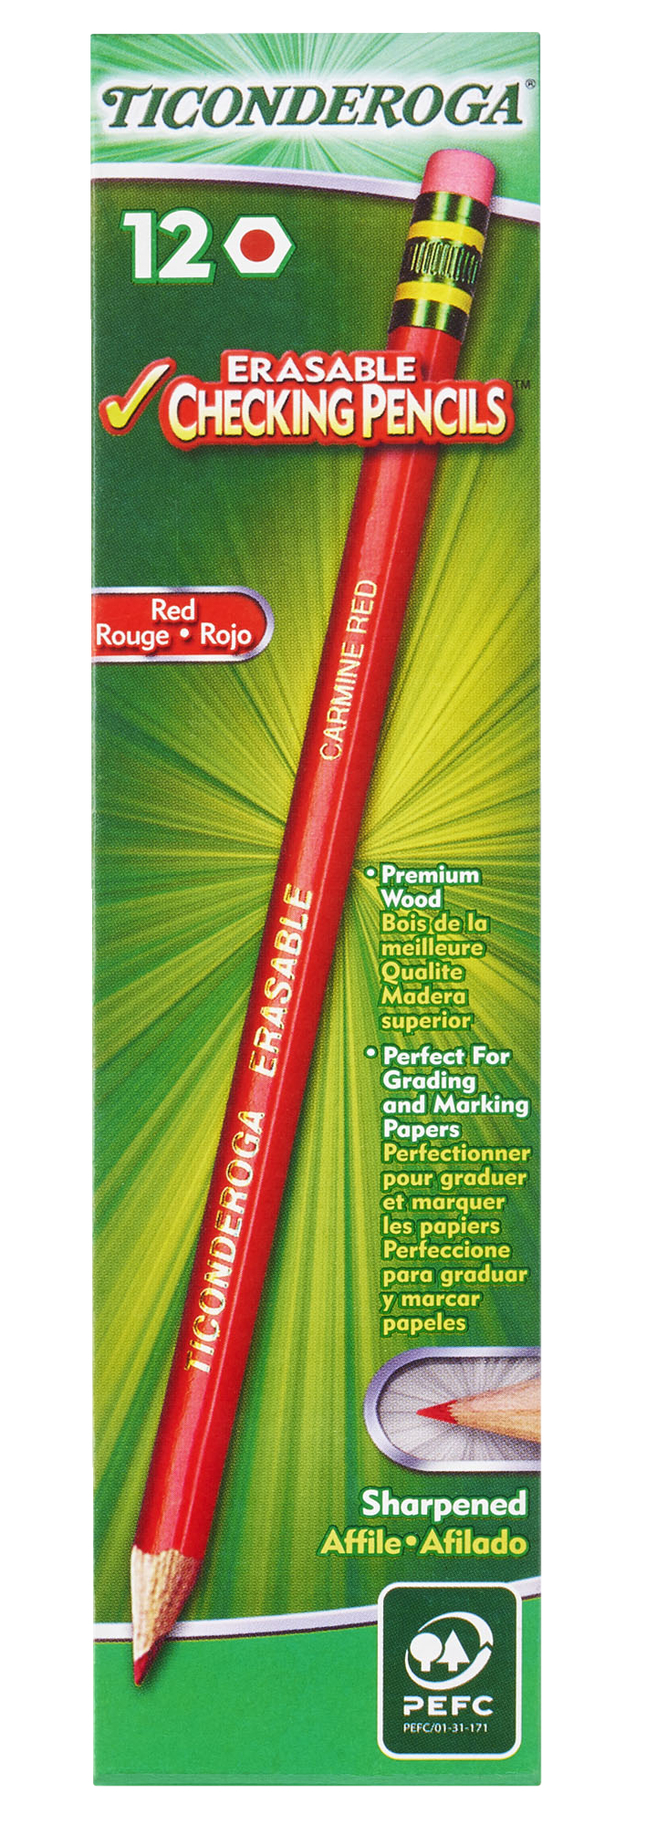 Ticonderoga Erasable Red Checking Pencils 12-Count 